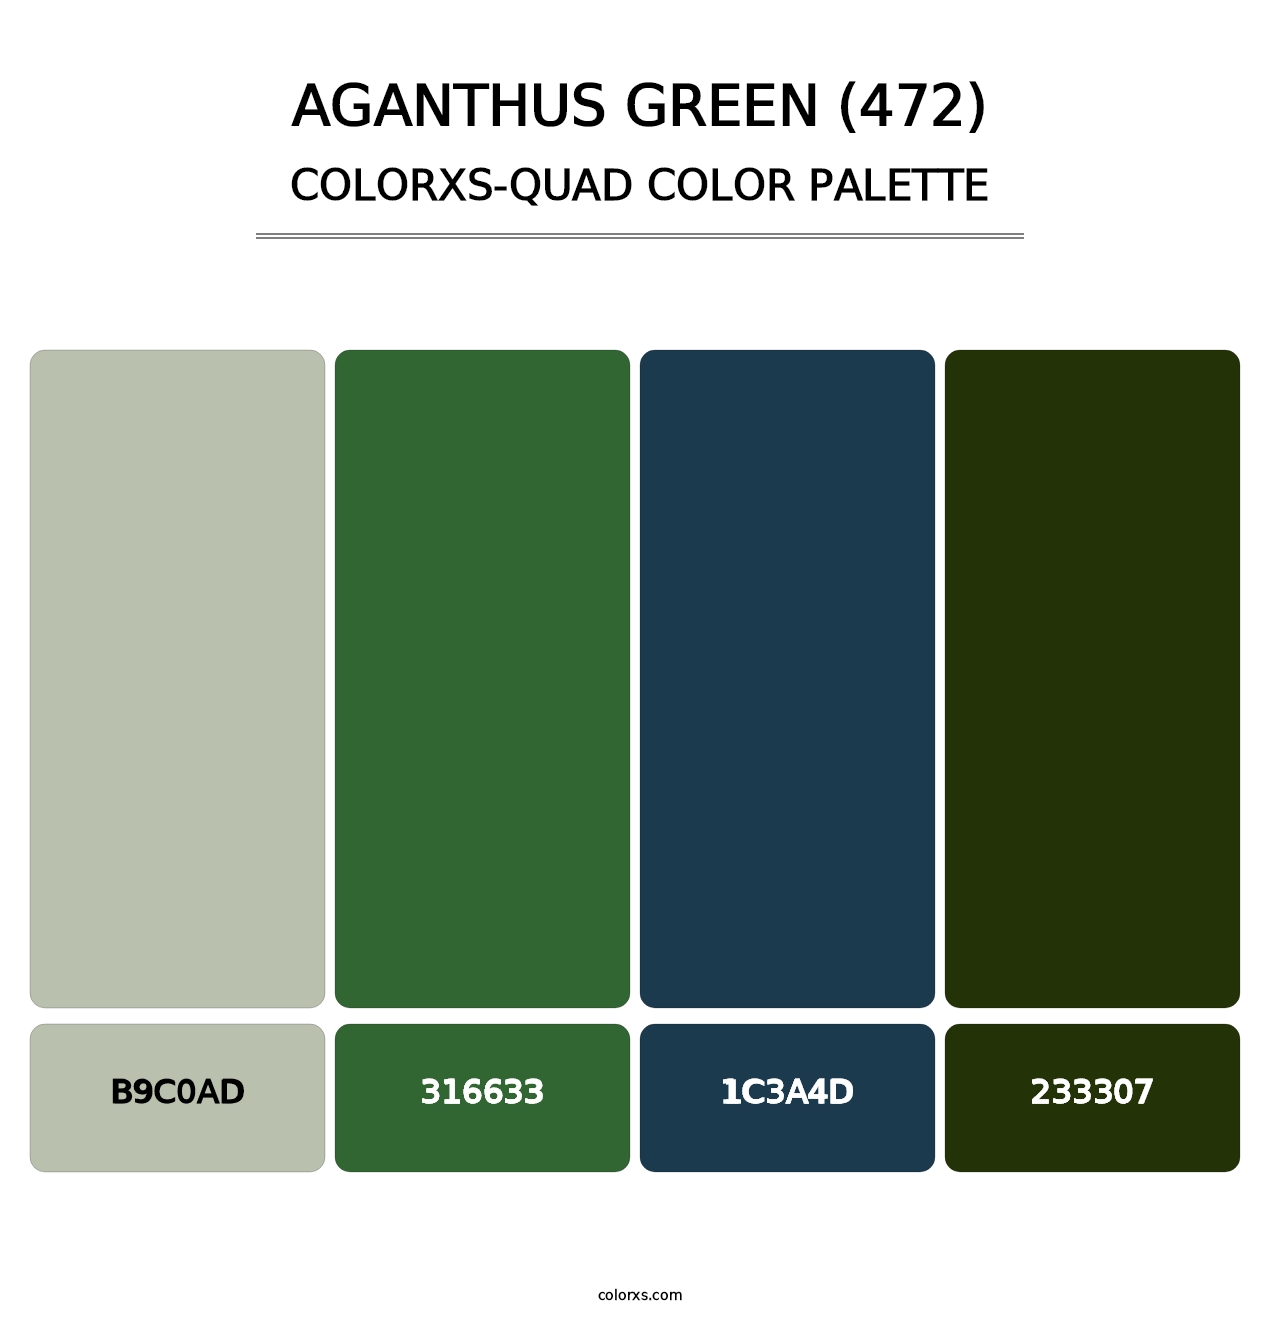 Aganthus Green (472) - Colorxs Quad Palette